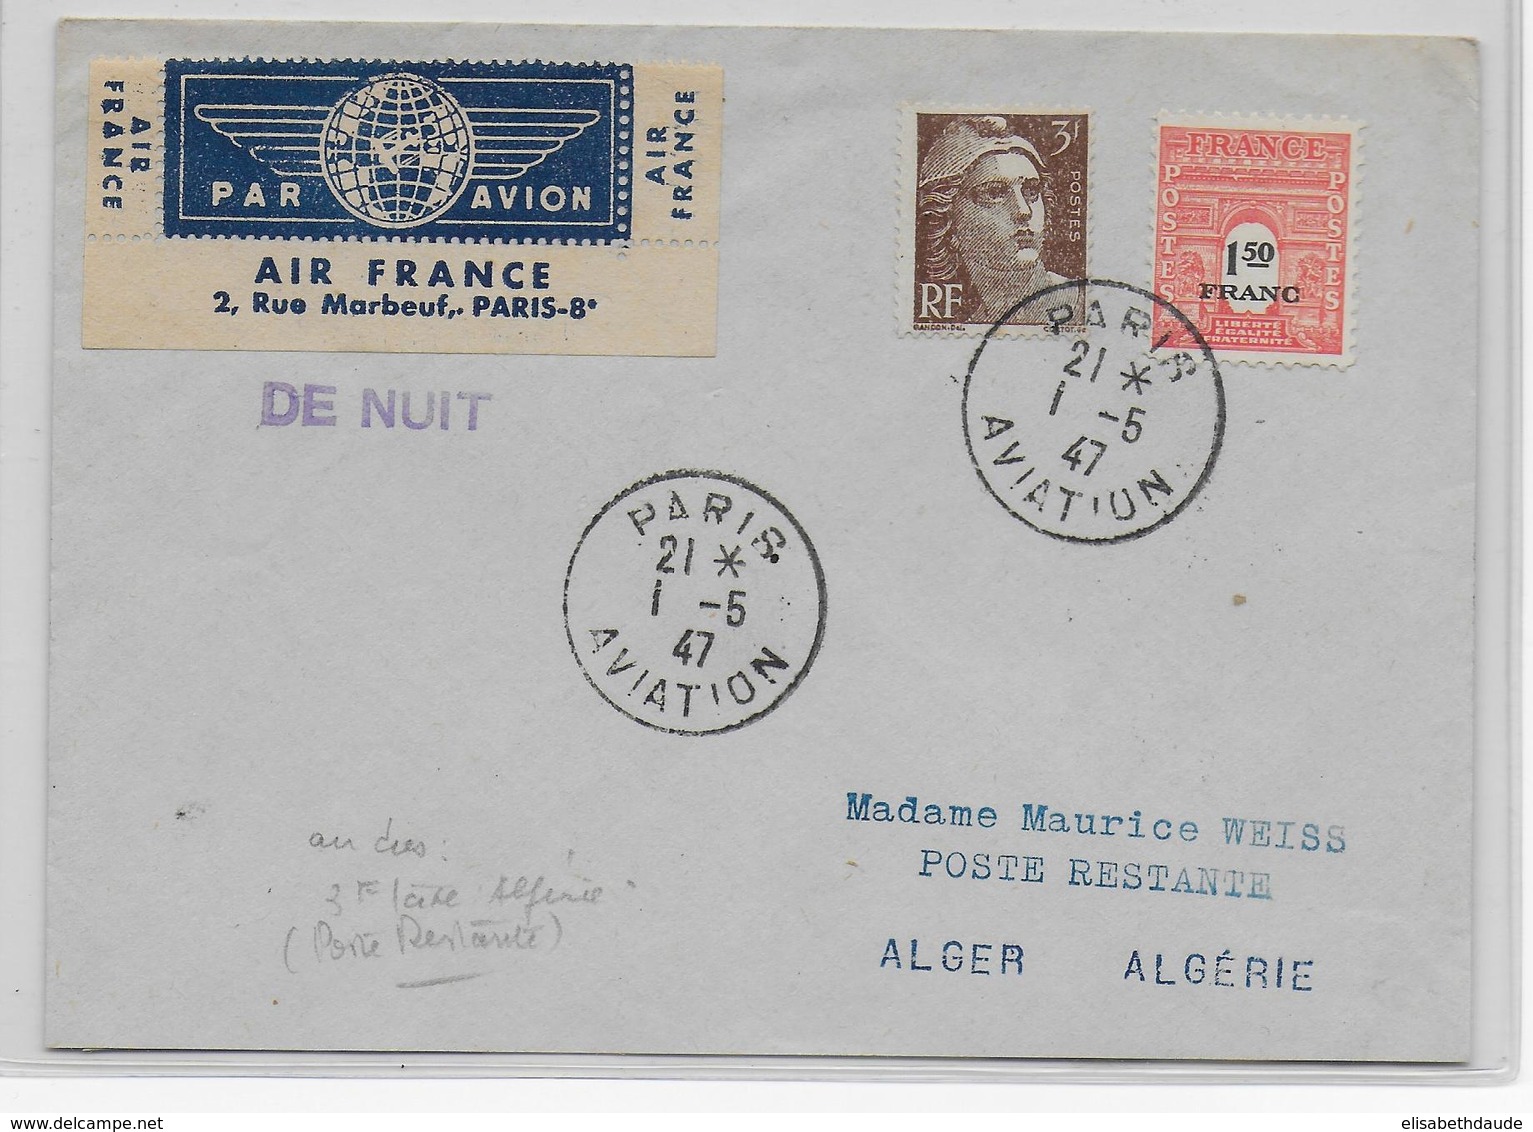 1947 - ENVELOPPE De PARIS AVIATION Par AVION De NUIT => ALGER  POSTE RESTANTE Avec TAXE ALGERIE AU DOS ! - 1960-.... Briefe & Dokumente